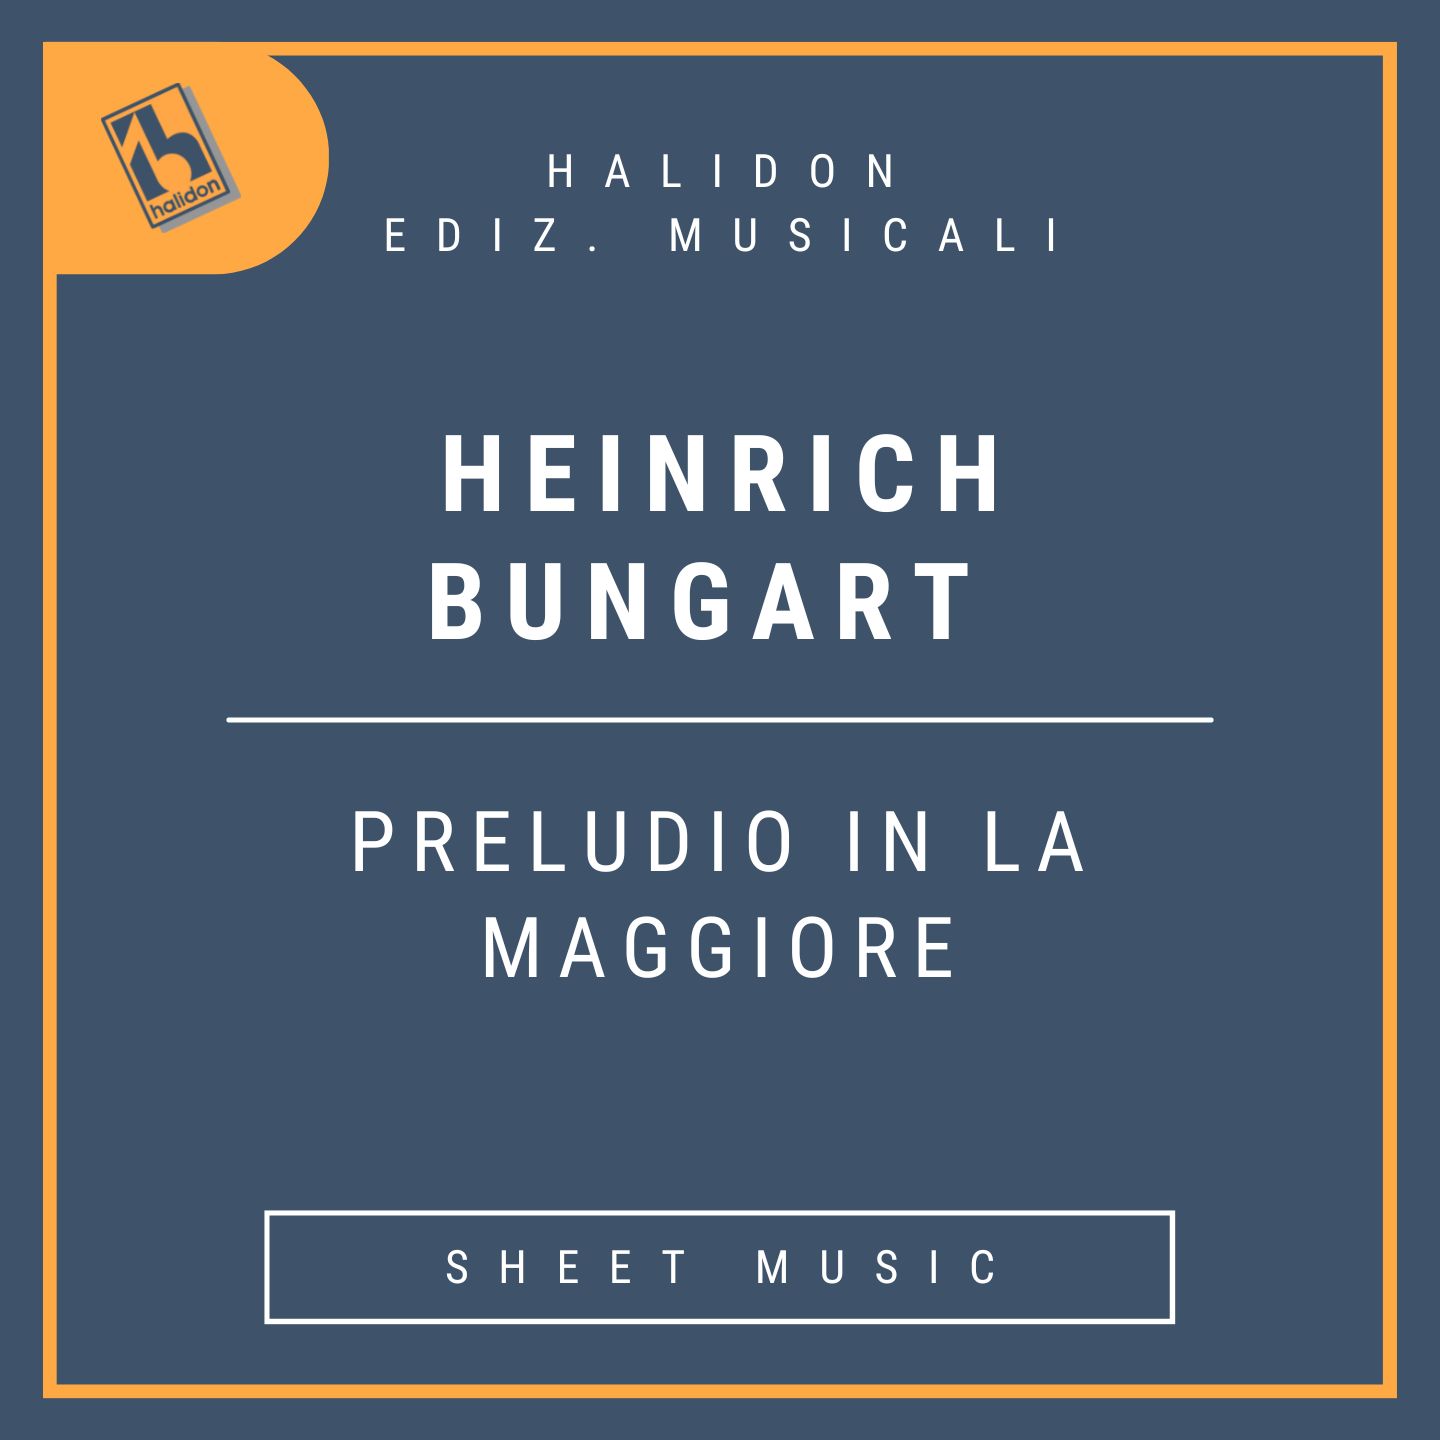 Preludio in La Maggiore (da 118 Preludi per Organo od Harmonium)